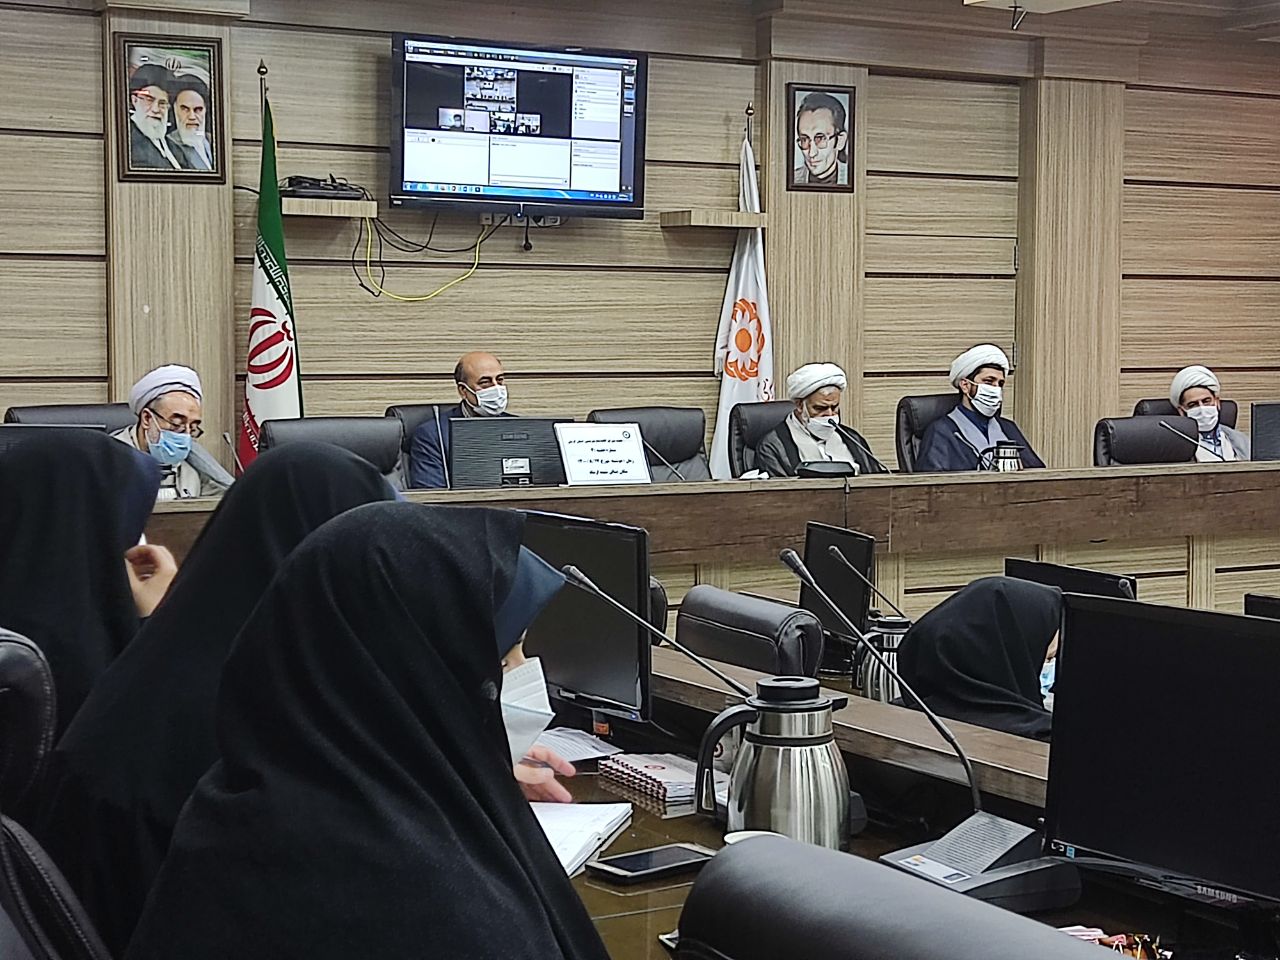 جلسه شورای اقامه نماز بهزیستی استان کرمان روز دوشنبه ۱۷ آبان ماه در محل سالن کنفرانس بهزیستی استان برگزار گردید.